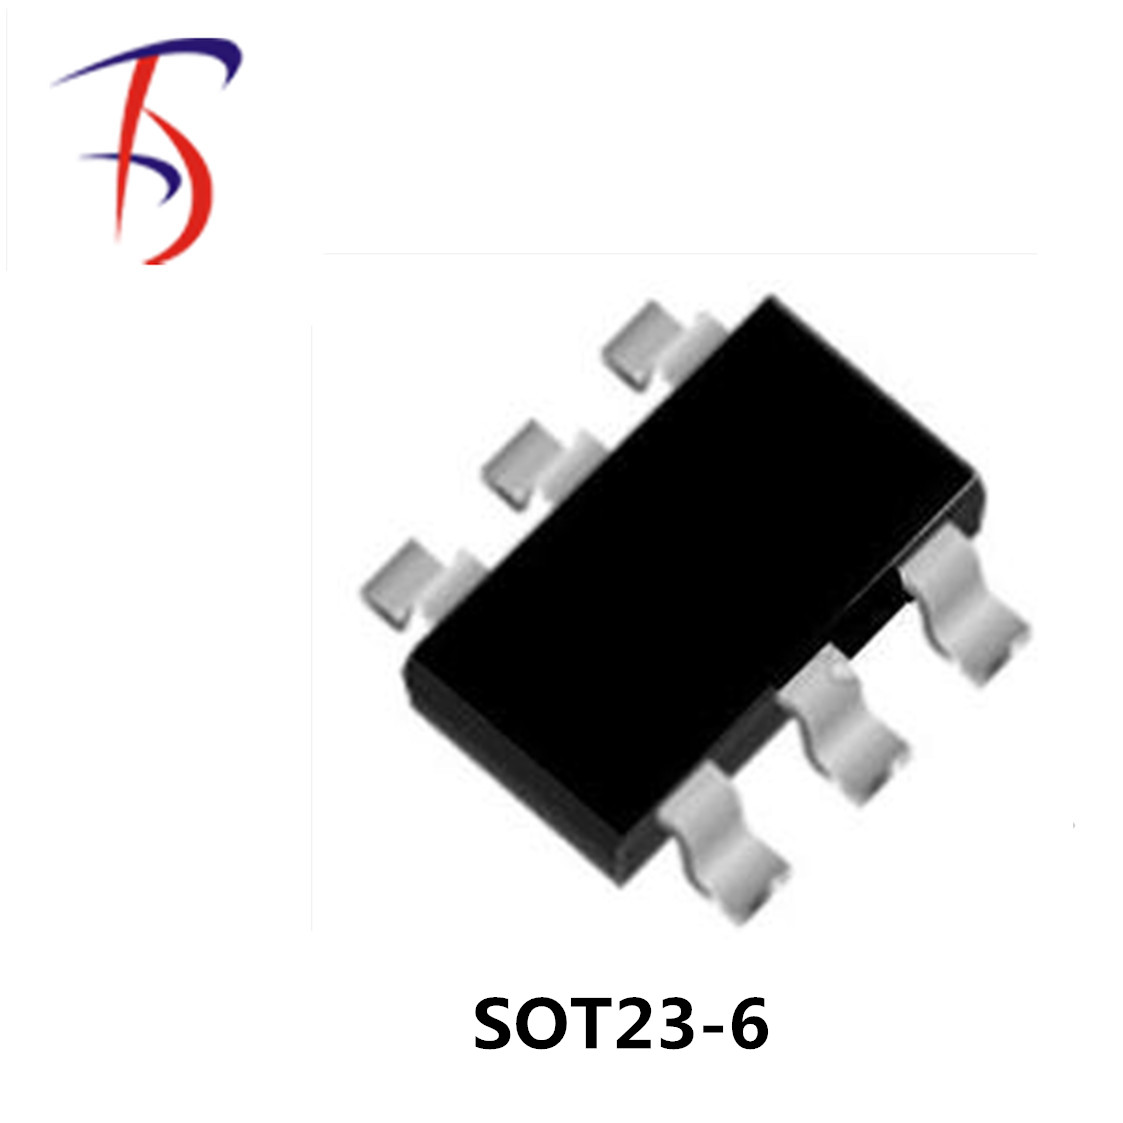 PS3120A-音箱U盘供电USB升压IC，抗干扰。